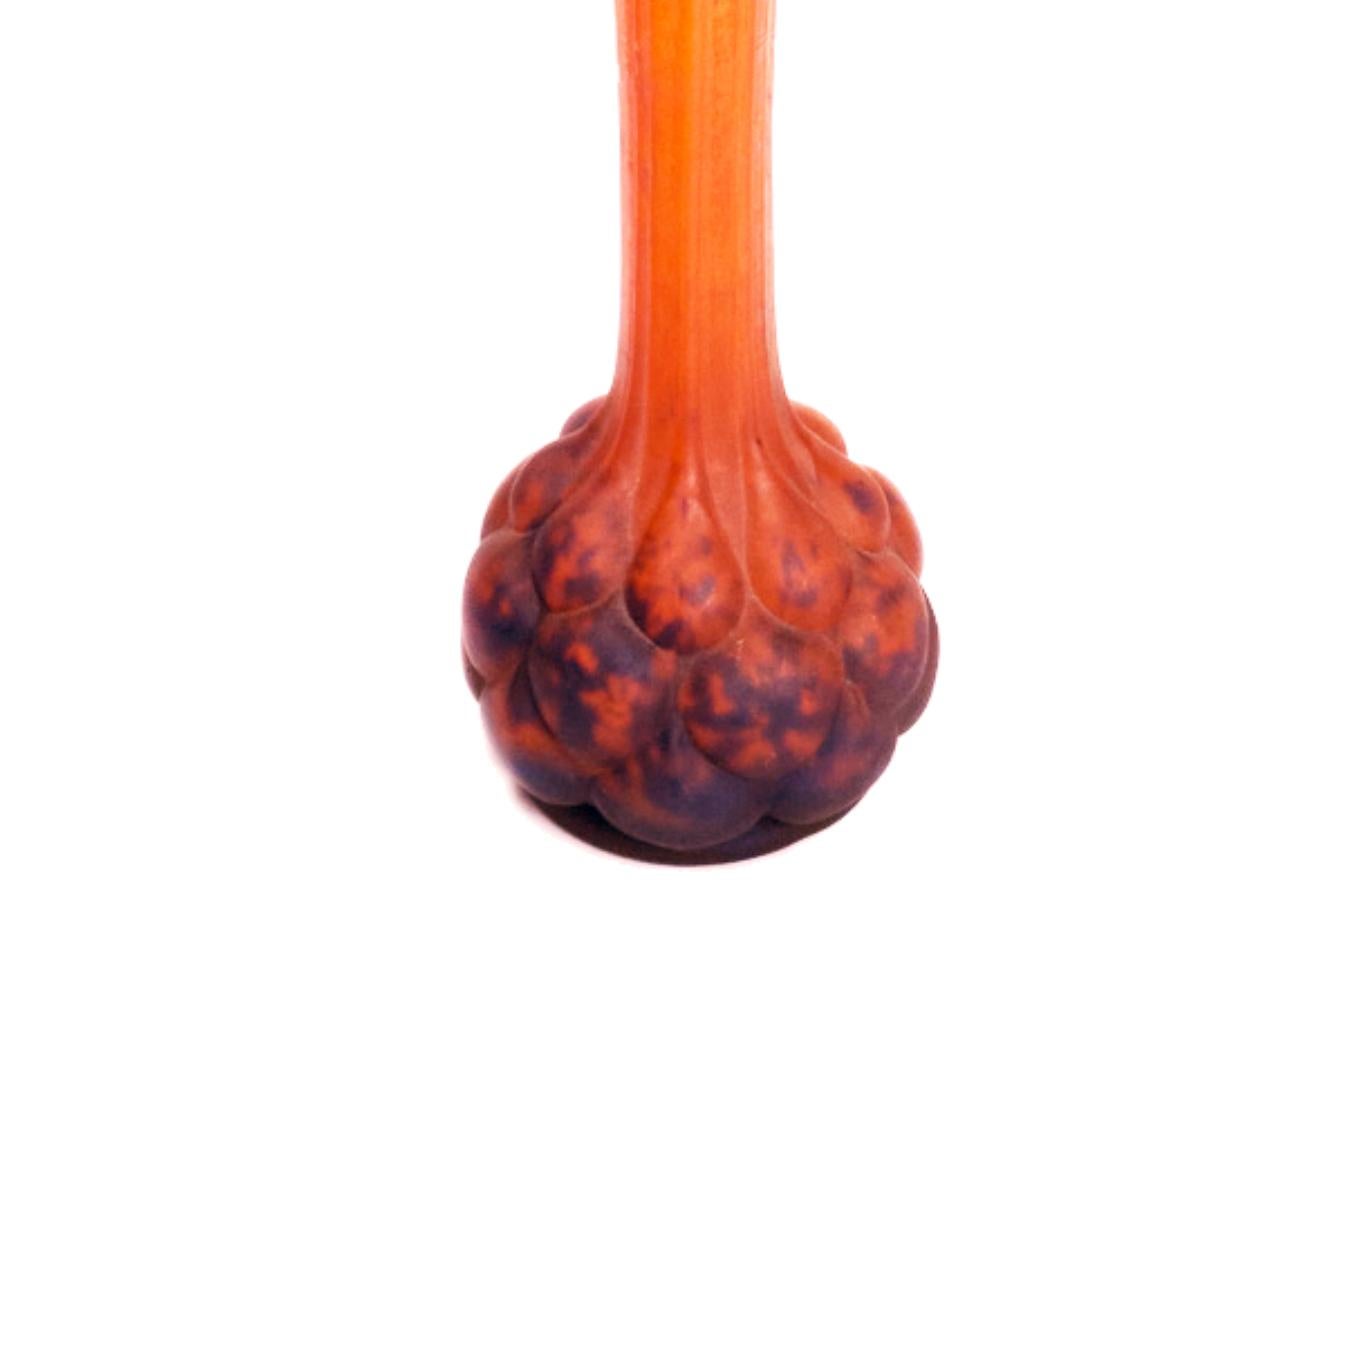 Polychrome Vase im Soliflores-Stil aus blauem, orangefarbenem und violettem Glas mit einer Kugel am Boden und einem dünnen Hals. Die Verrerie d'Art Lorraine war eine Marke von Daum, die von Paul Daum und Pierre D'Avesn in der Glashütte Belle Etoile